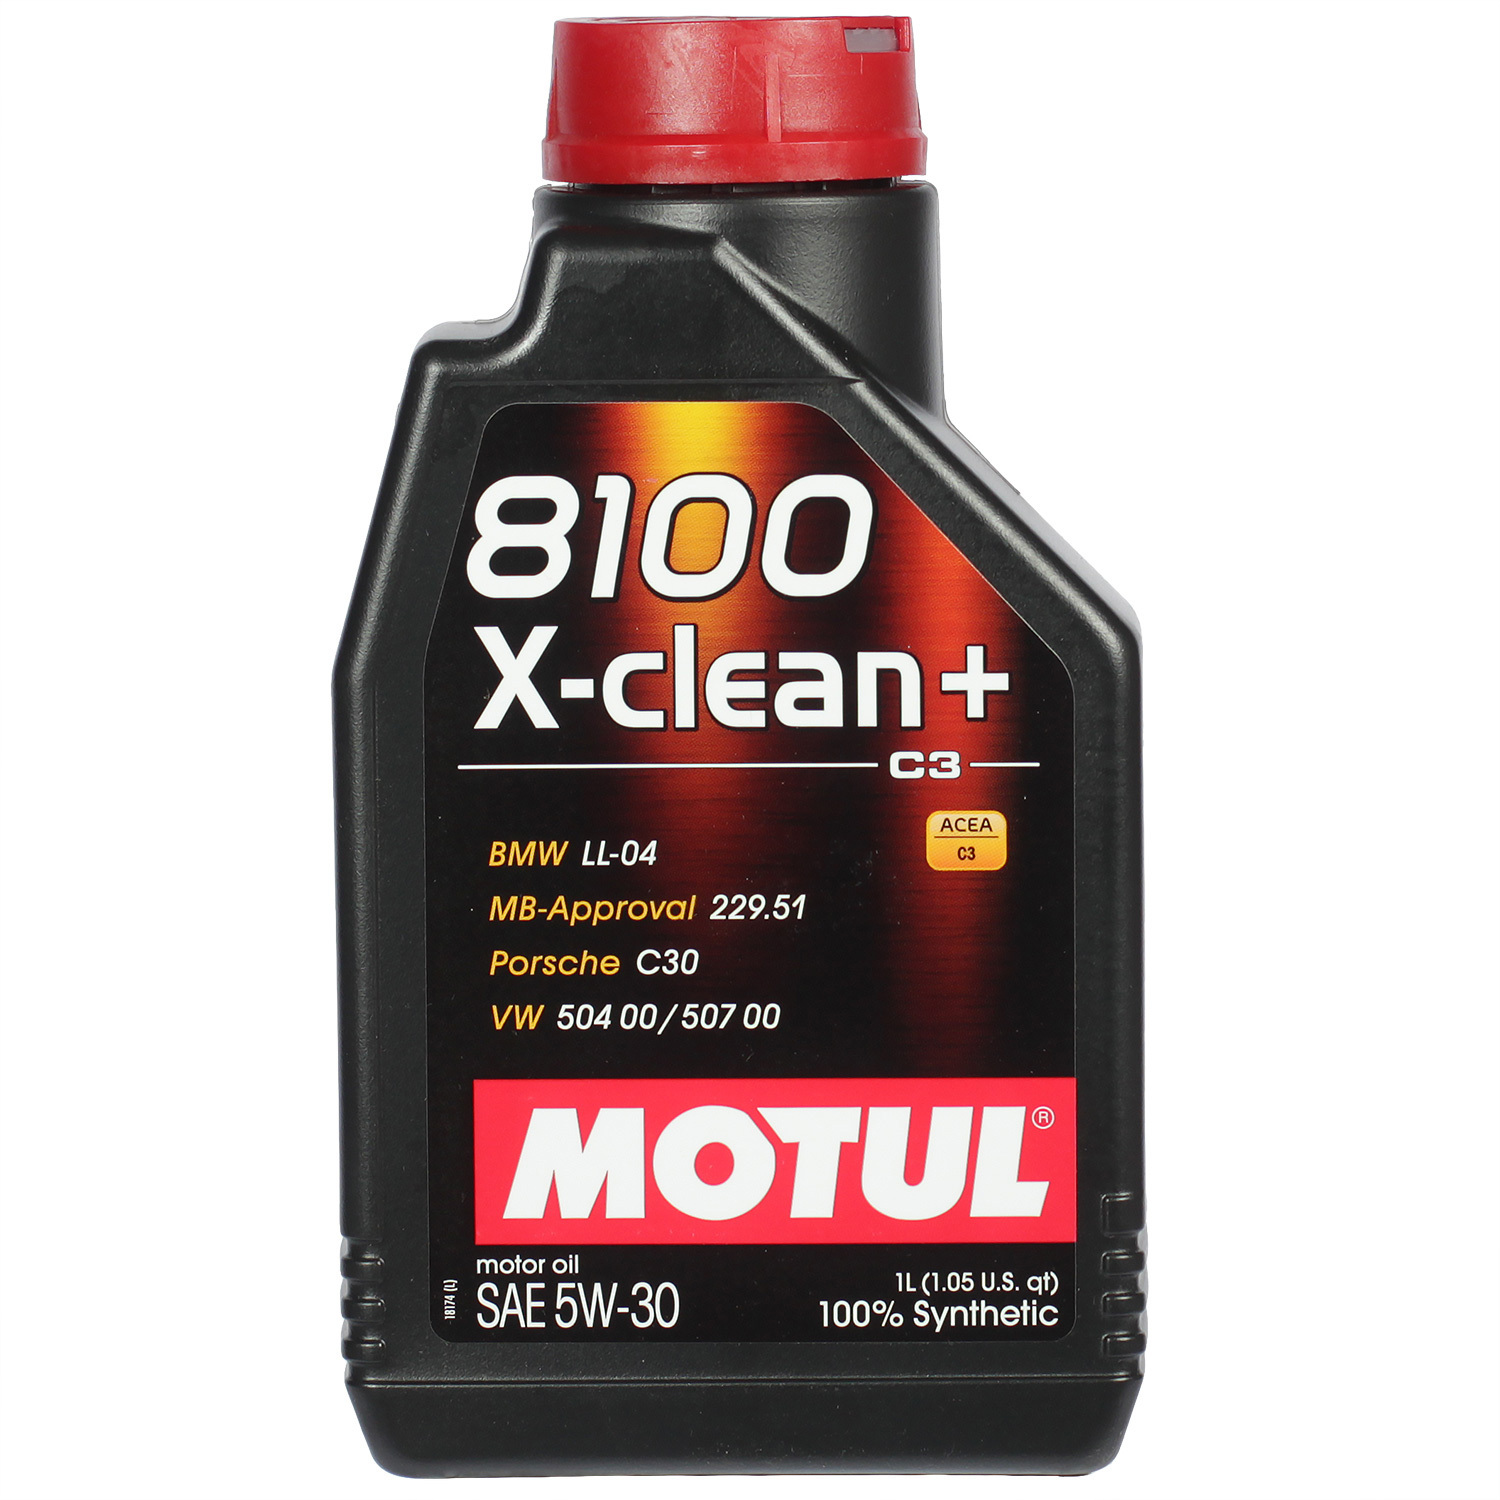 Motul Моторное масло Motul 8100 X-clean+ 5W-30, 1 л motul моторное масло motul 6100 syn clean 5w 30 5 л